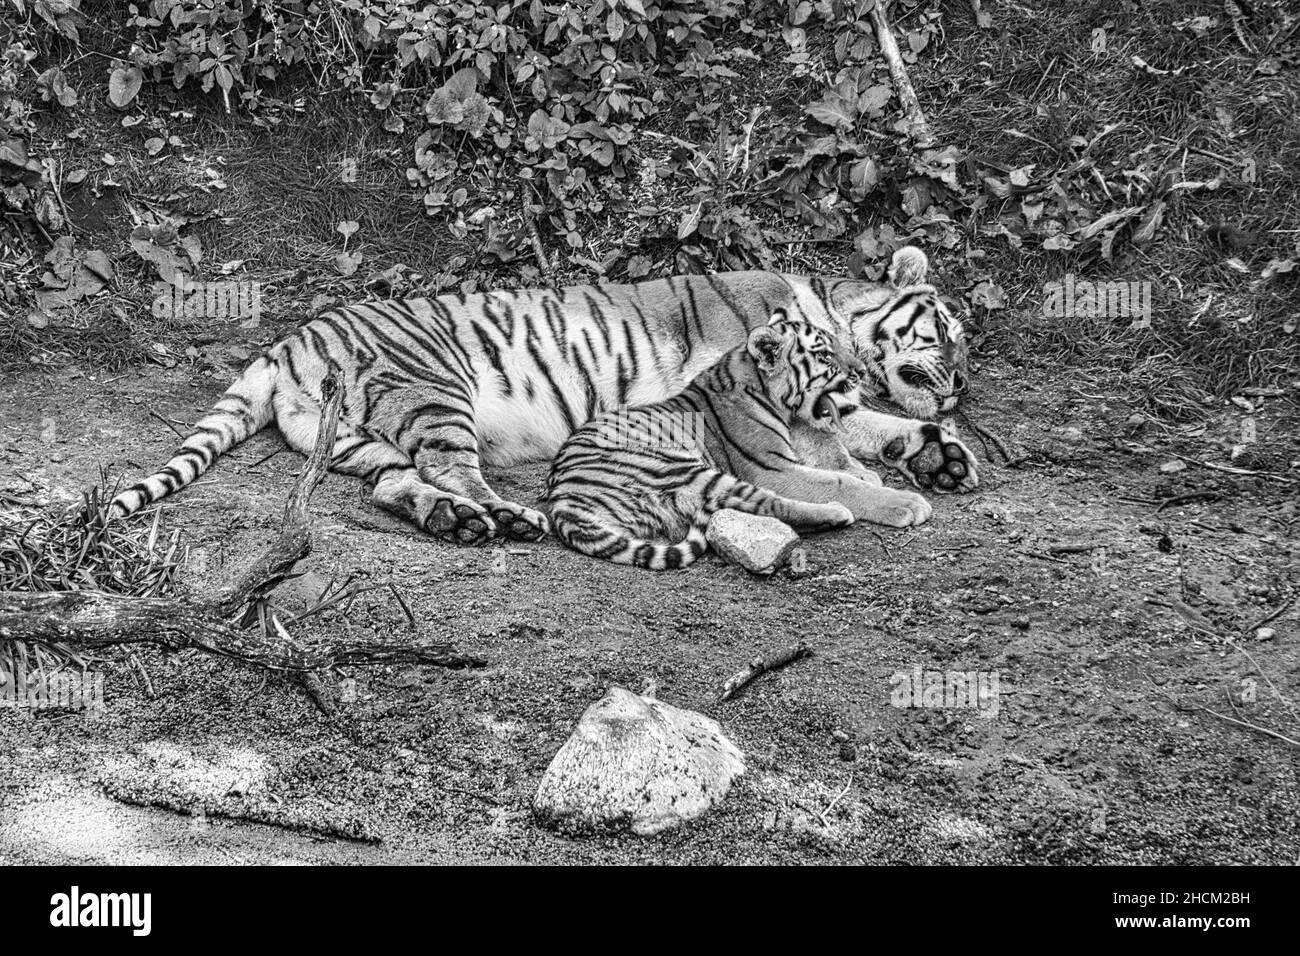 Mère tigre de Sibérie avec son cub, en noir et blanc, couché sur un pré. Puissant chat prédateur.Le plus grand chat au monde et menacé Banque D'Images